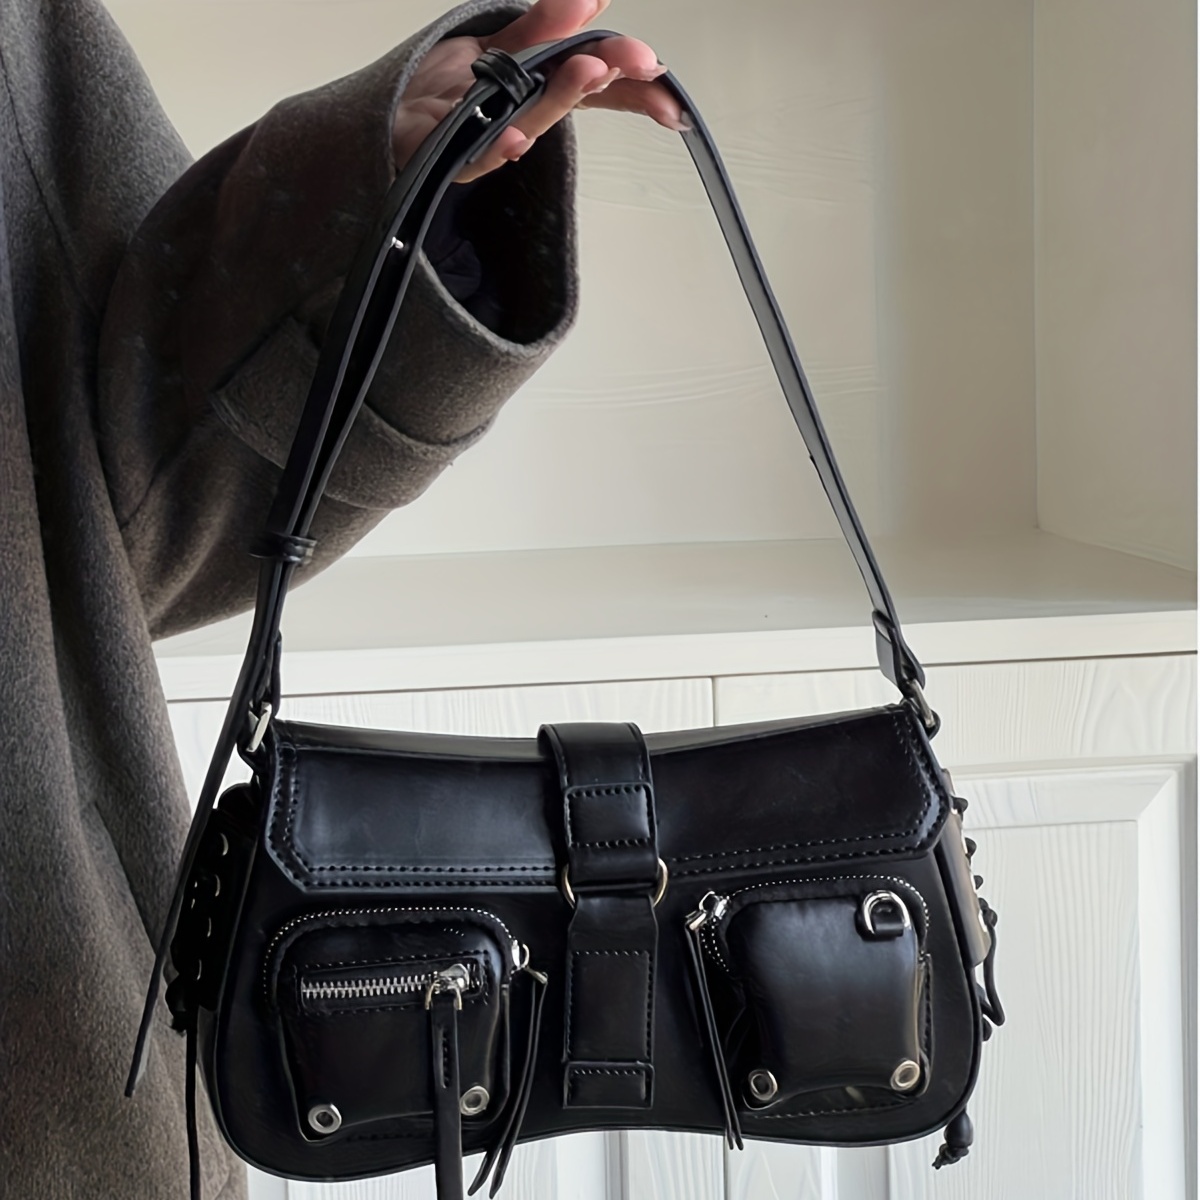 Vintage Denim Crescent Bag, Retro Tassel Shoulder Bag, Women's Y2k Grunge  Handbag & Hobo Purse - Temu